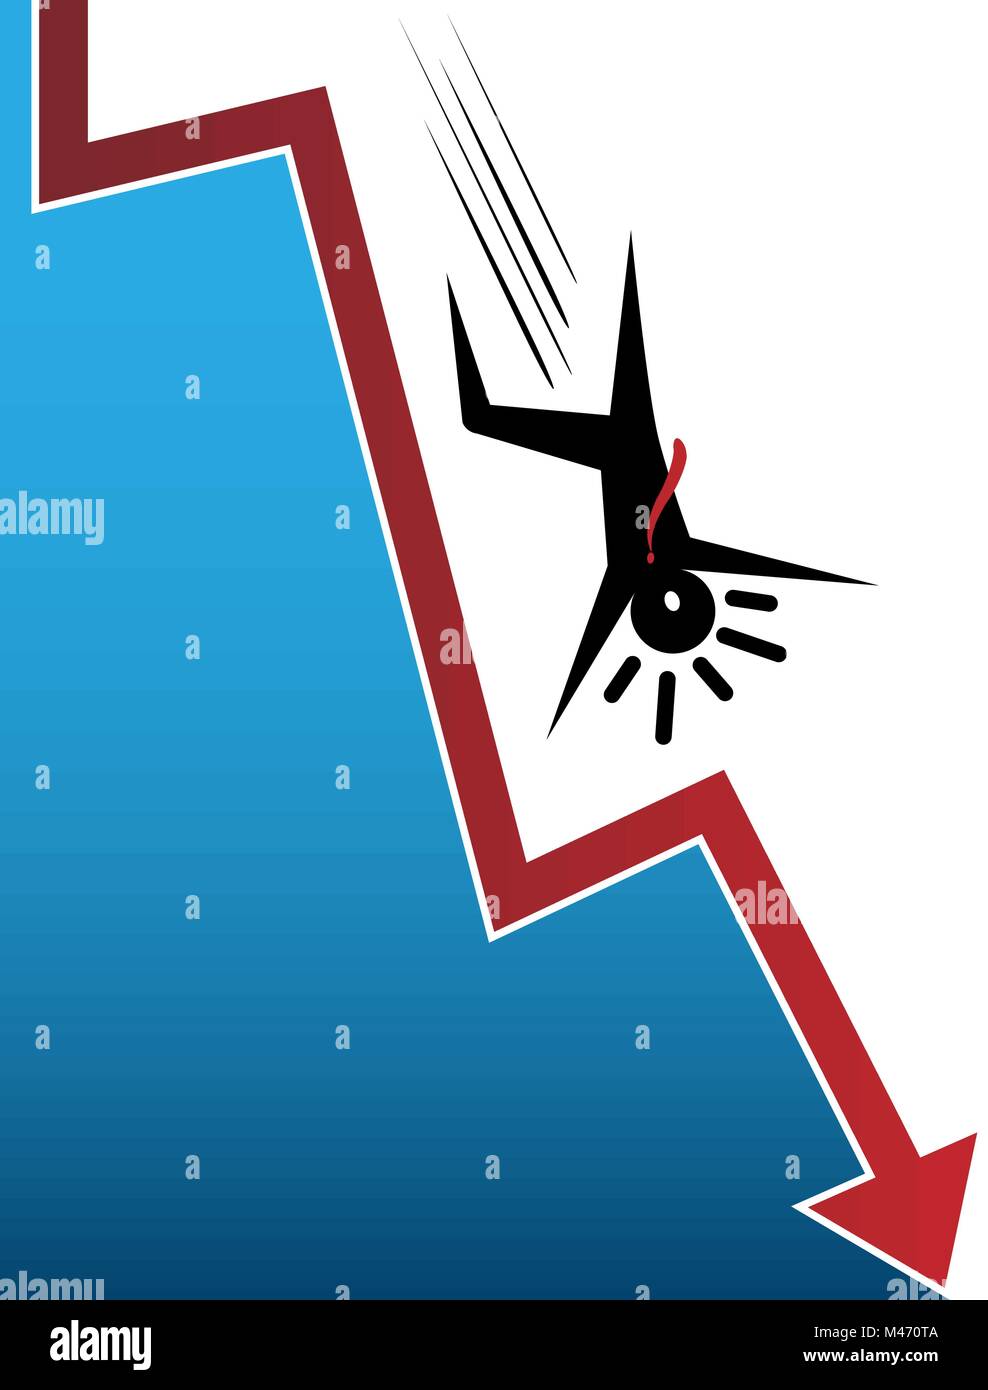 Una immagine di una caduta di Stock Market Crash con proprietari. Illustrazione Vettoriale